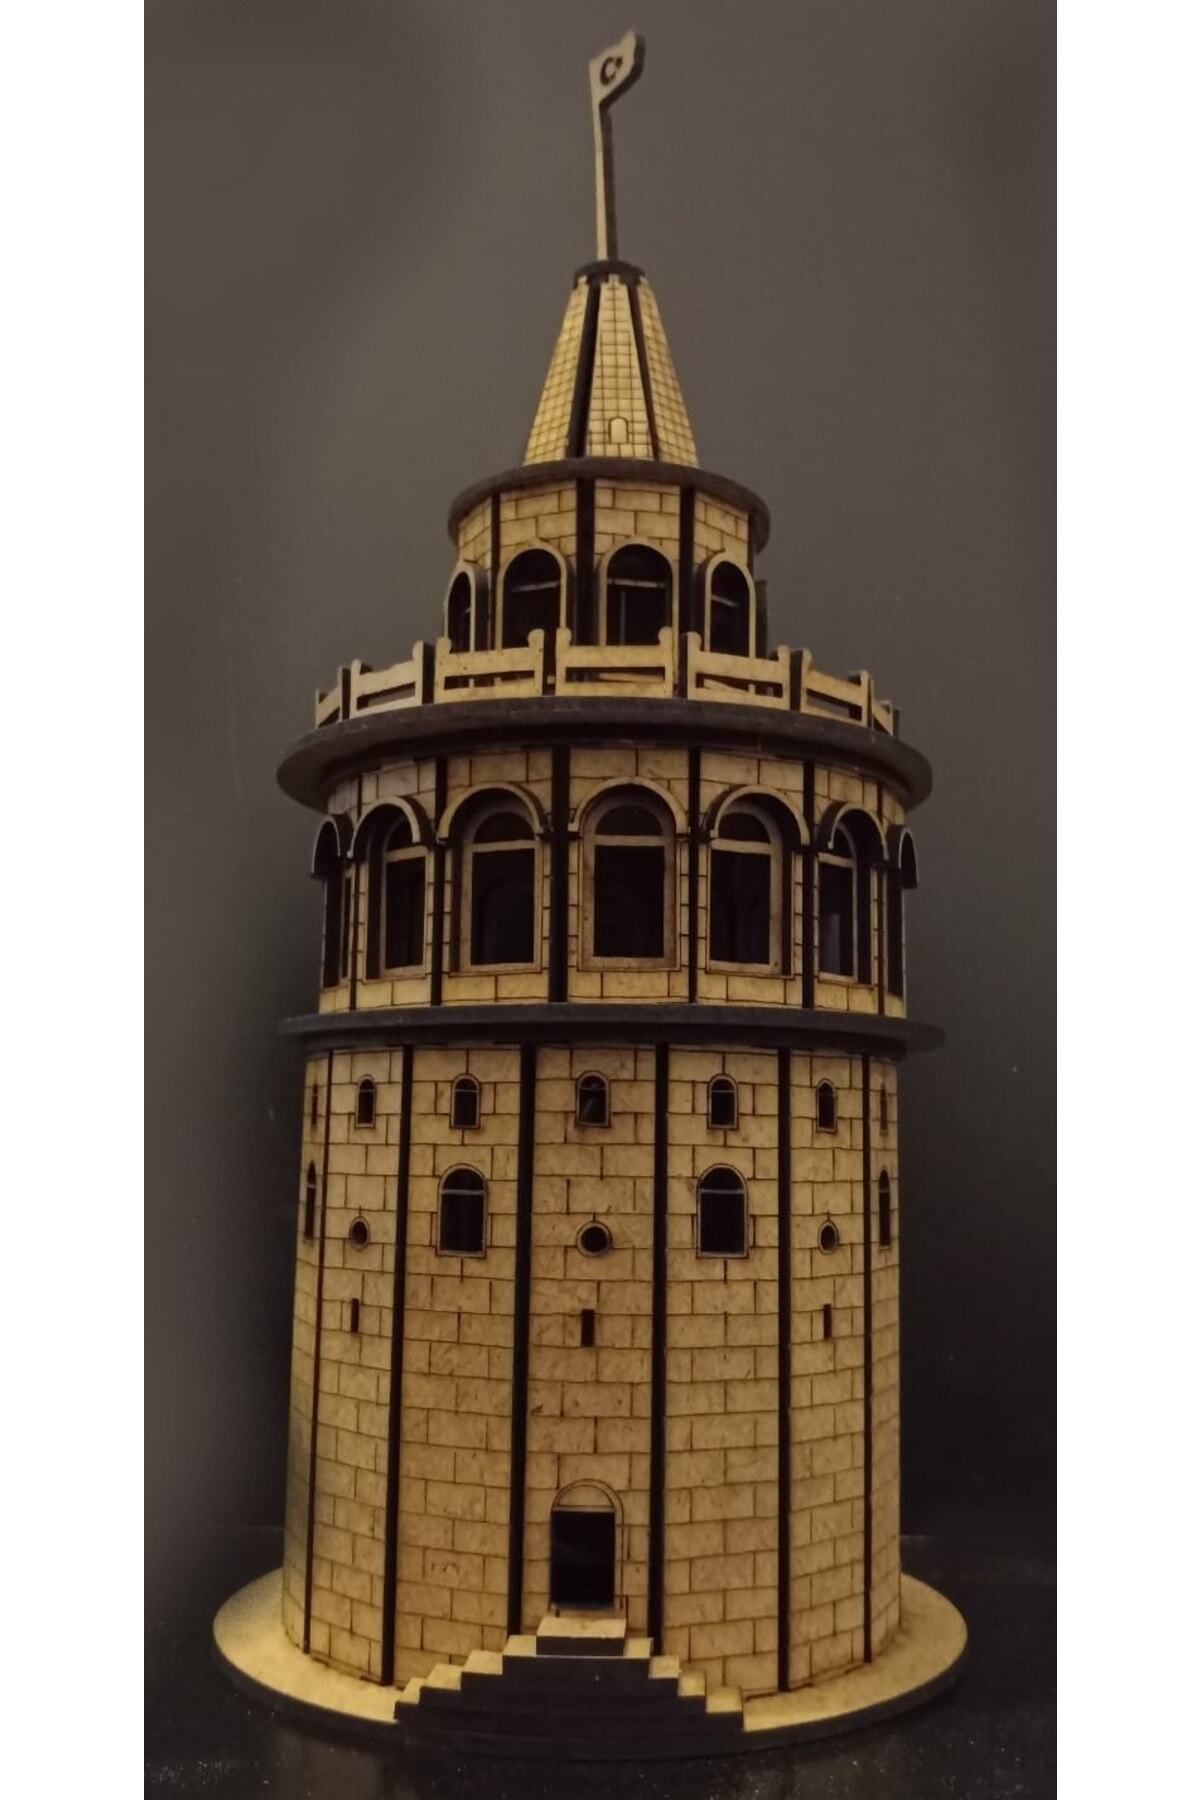 TLR hobi Galata Kulesi Montajı yapılmış olarak gönderilecektir.